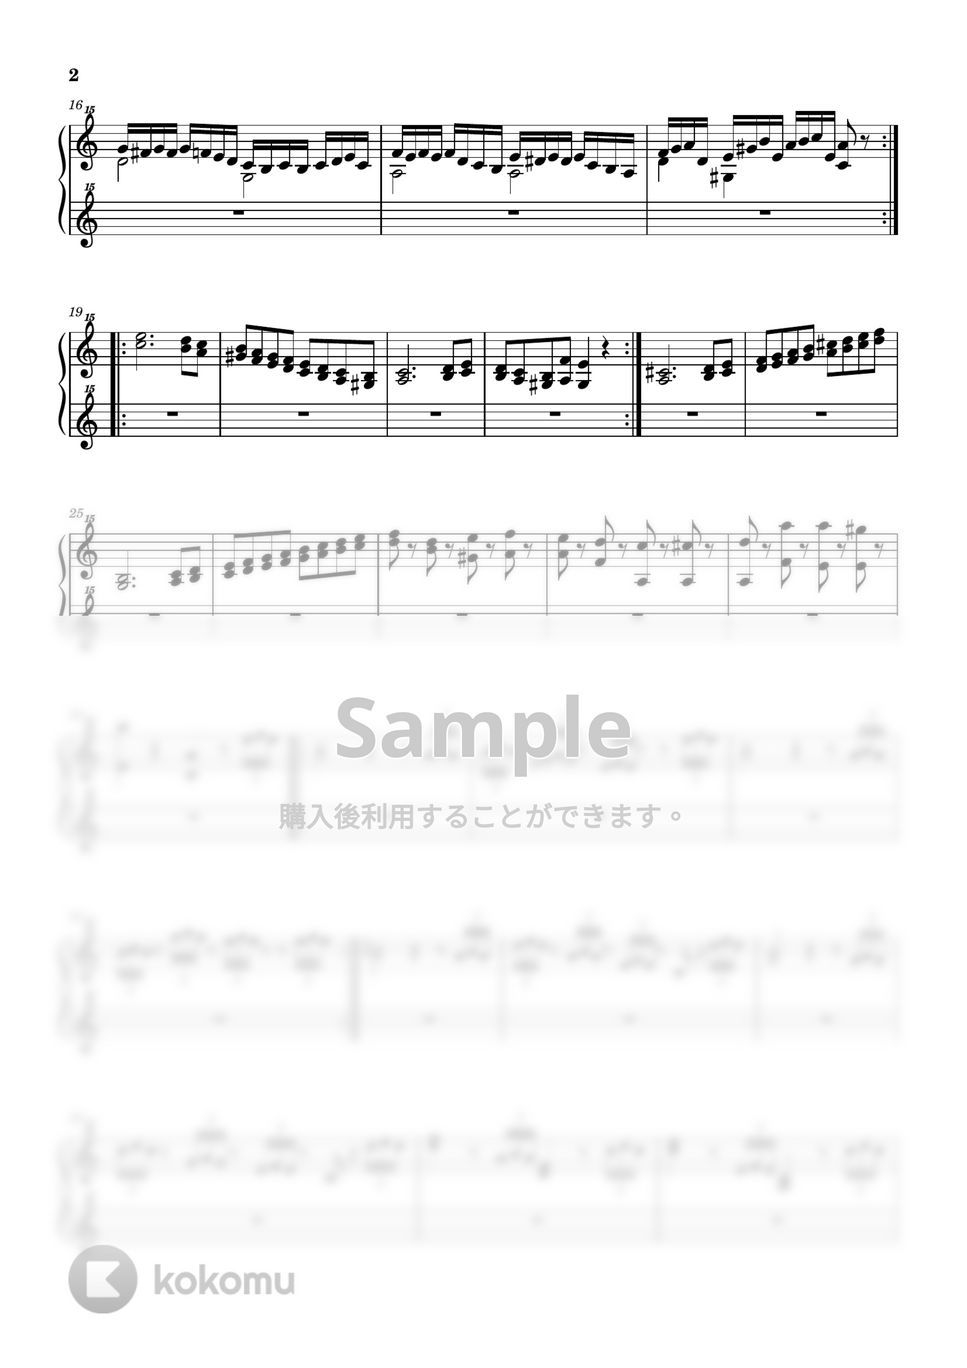 フランツ・リスト - リスト『パガニーニの主題による大練習曲 第6番』 (トイピアノ / 32鍵盤 / リスト) by 川西三裕